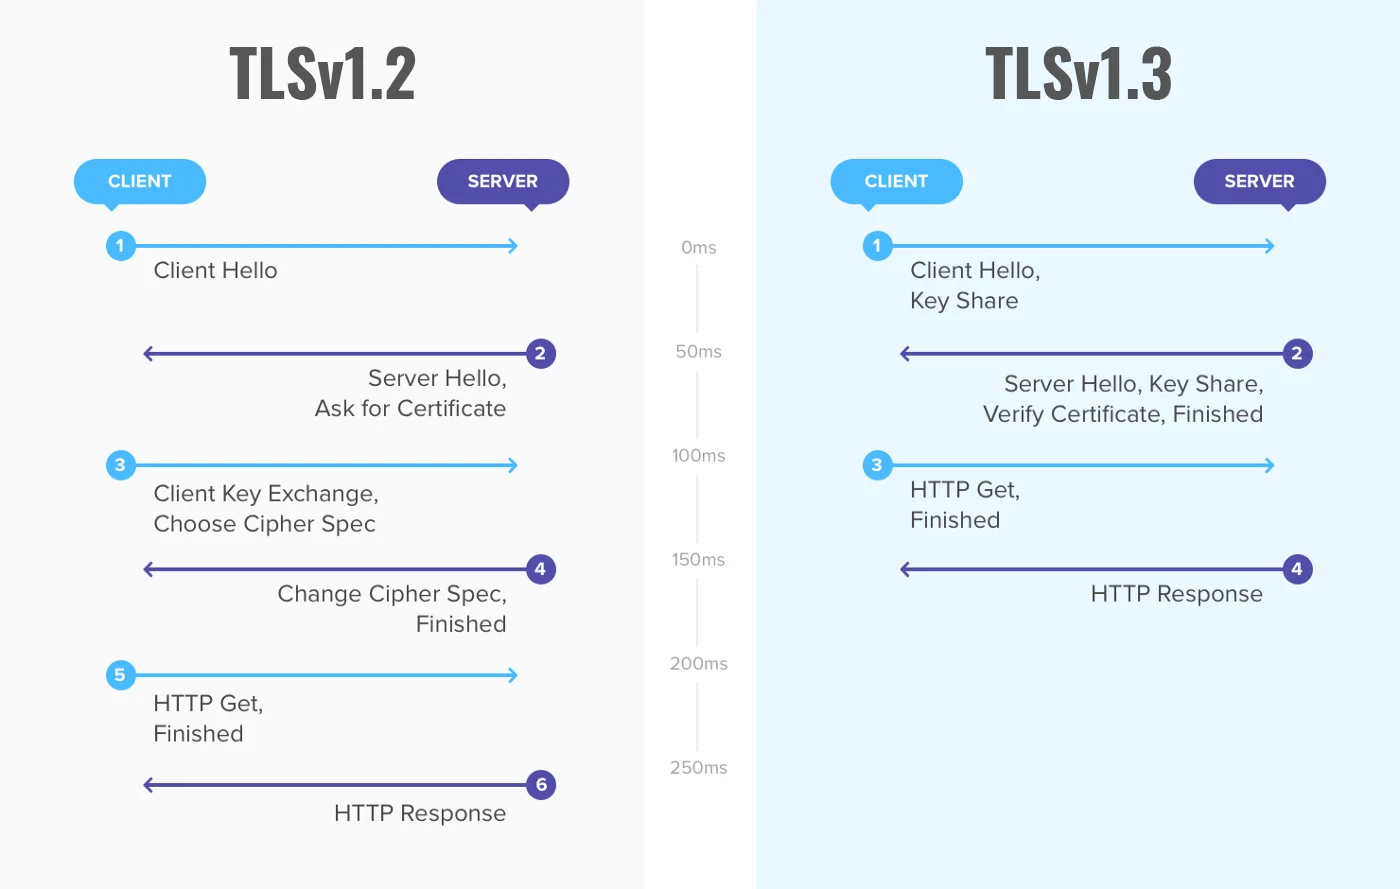 ความแตกต่างระหว่าง TLSv1.2 ซิ TLSv1.3